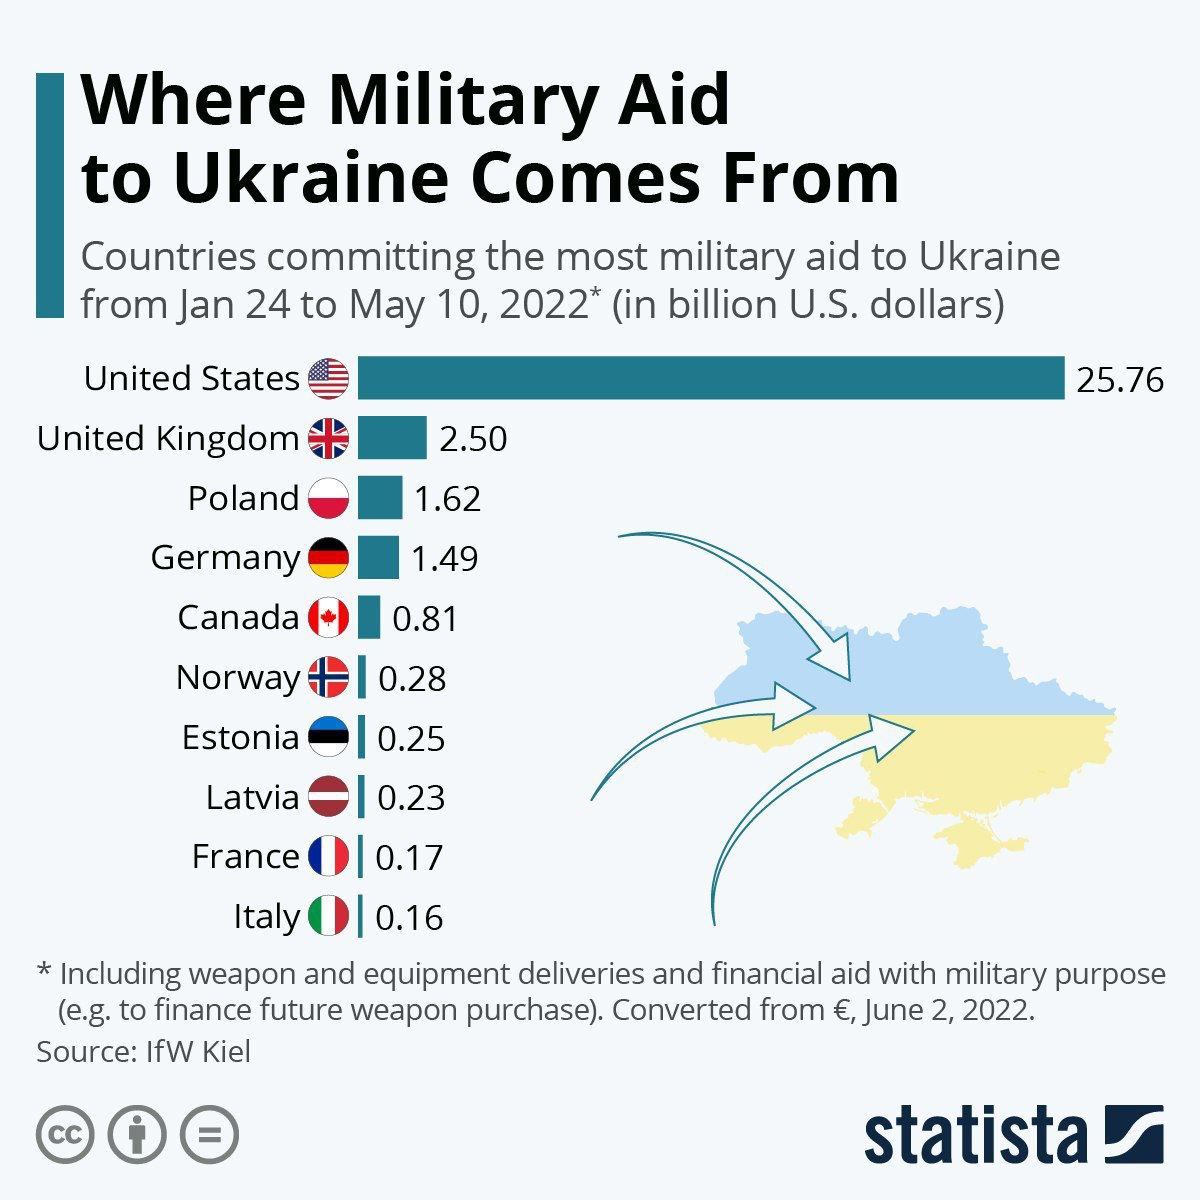 Країни, які зобов'язалися передати Україні найбільше зброї з 24 лютого по 10 травня 2022 року (у мільярдах доларів), дані - IfW.